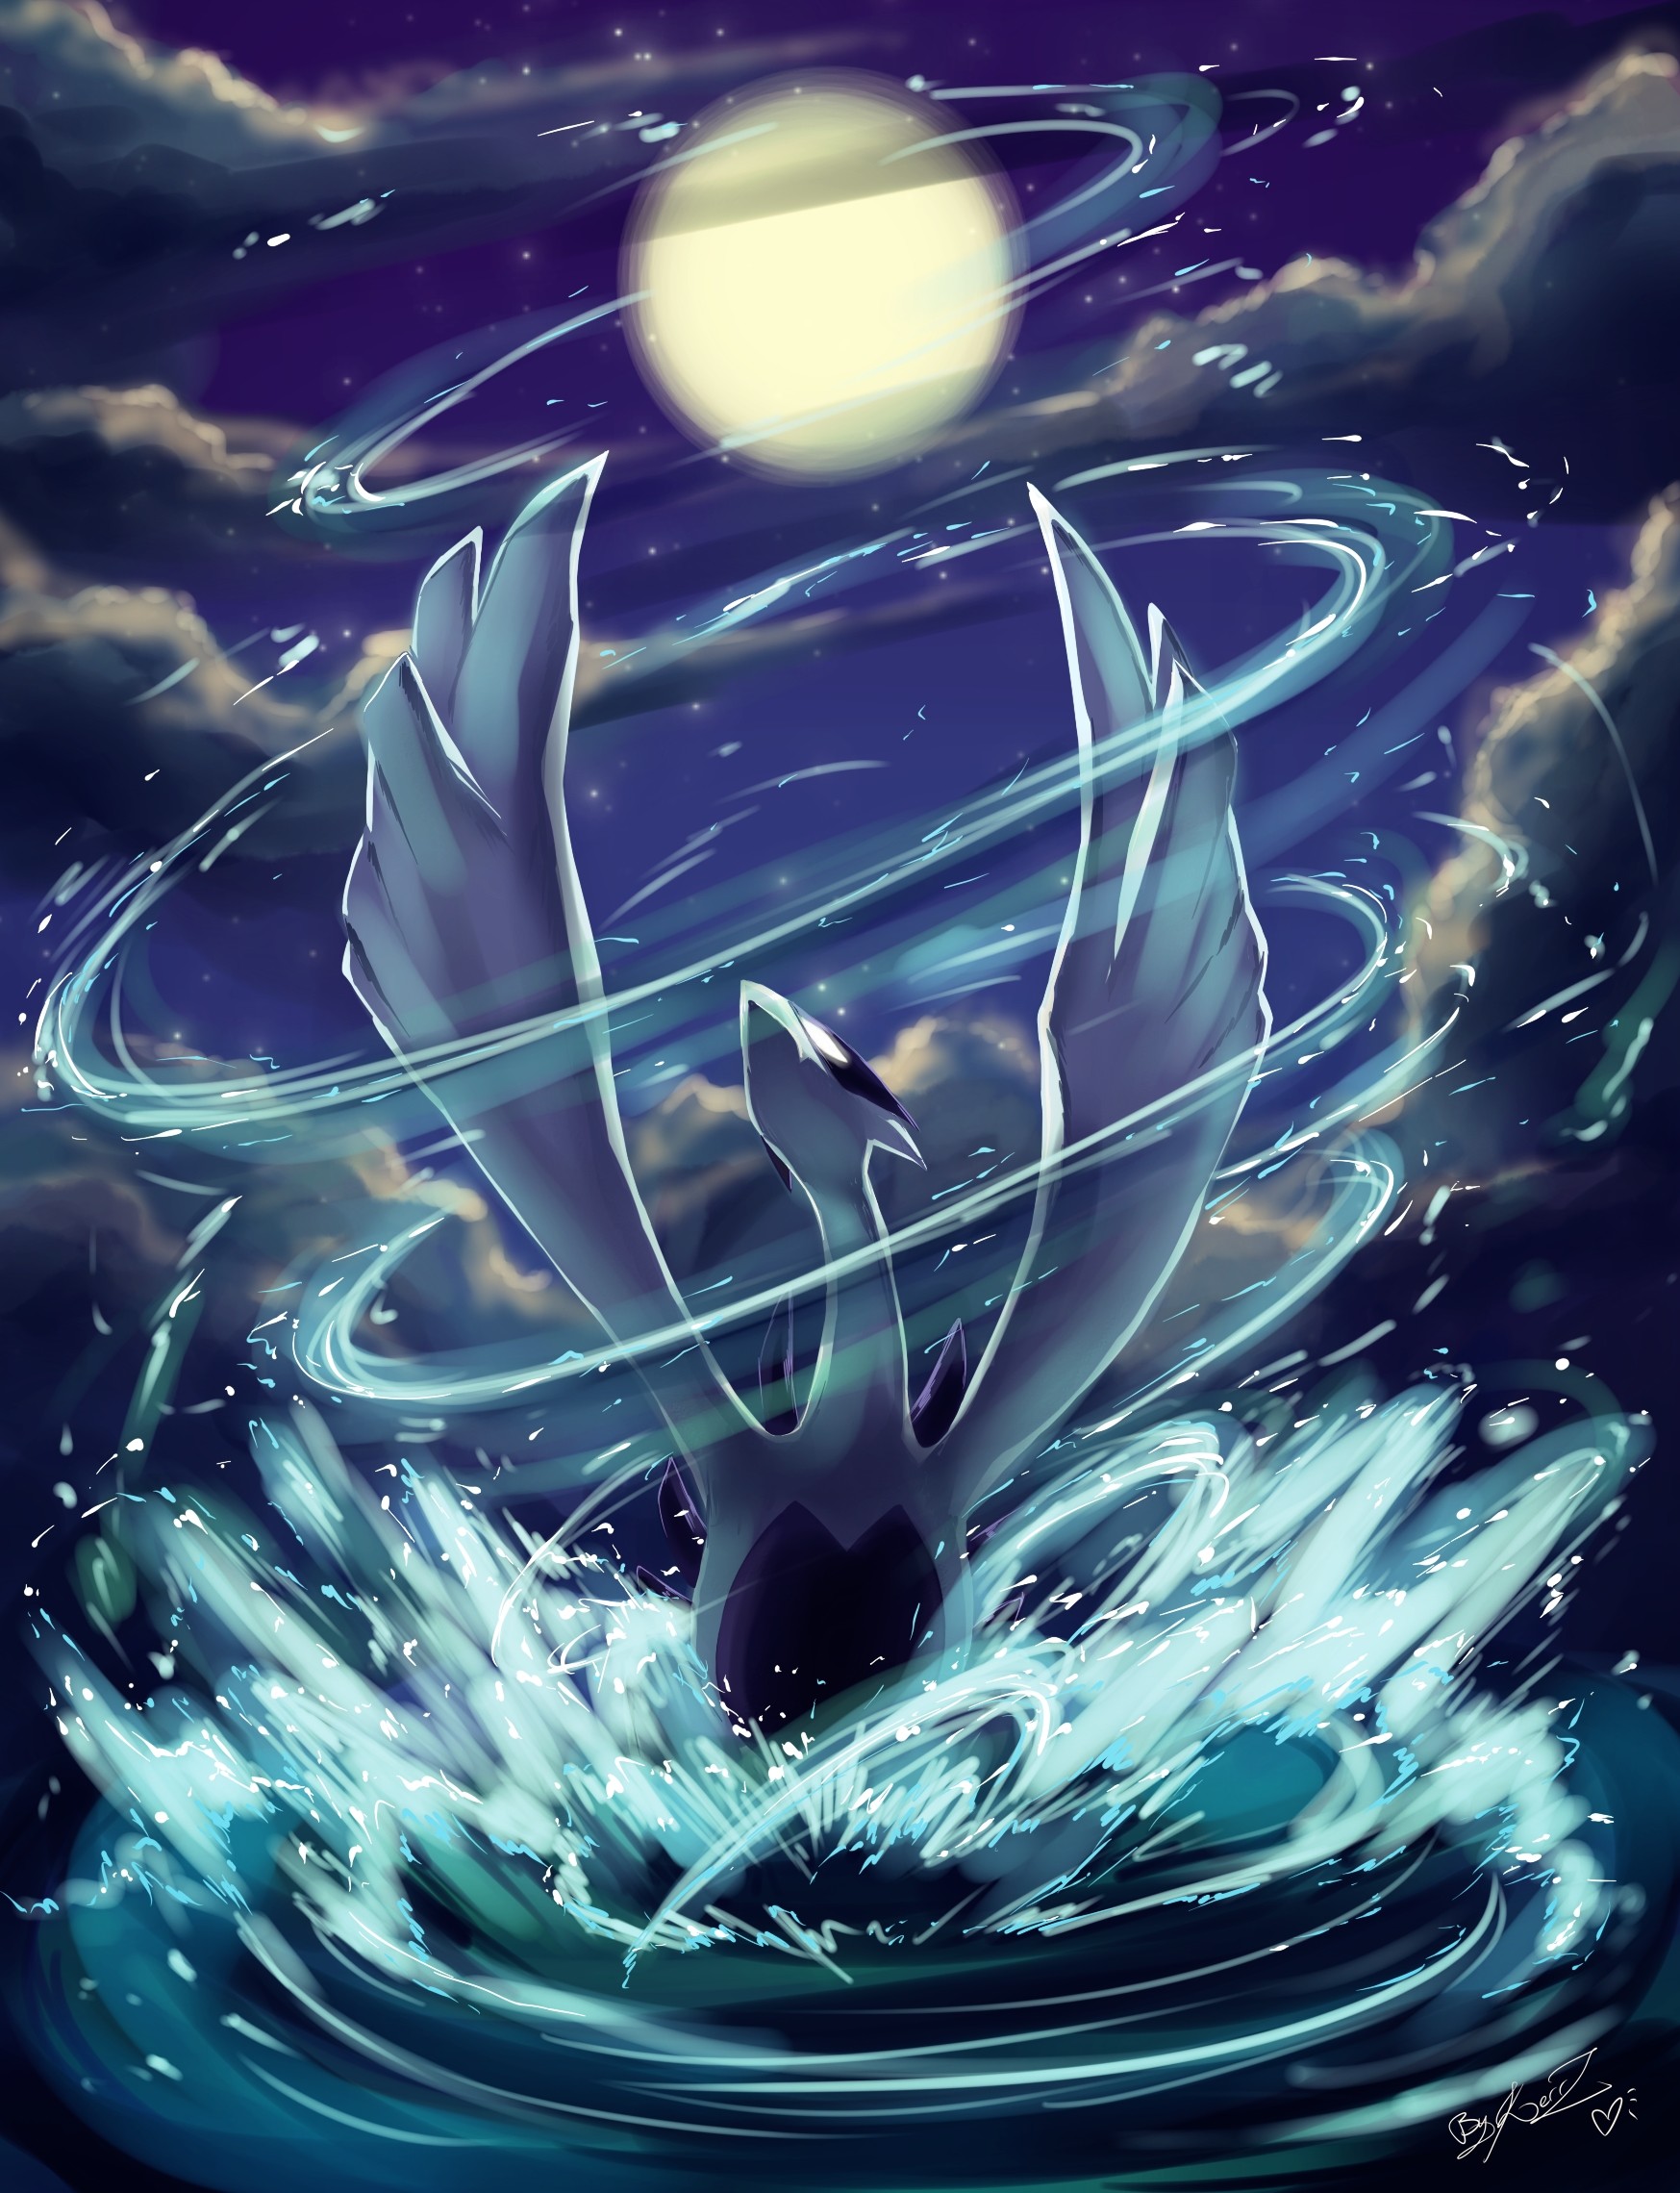 Lugia, một trong những Pokemon huyền thoại, sở hữu bộ lông xanh lam lung linh loáng choáng. Hãy cùng chiêm ngưỡng những bức ảnh Lungia đẹp nhất này để bạn có thôi miên cảnh đẹp của họ.